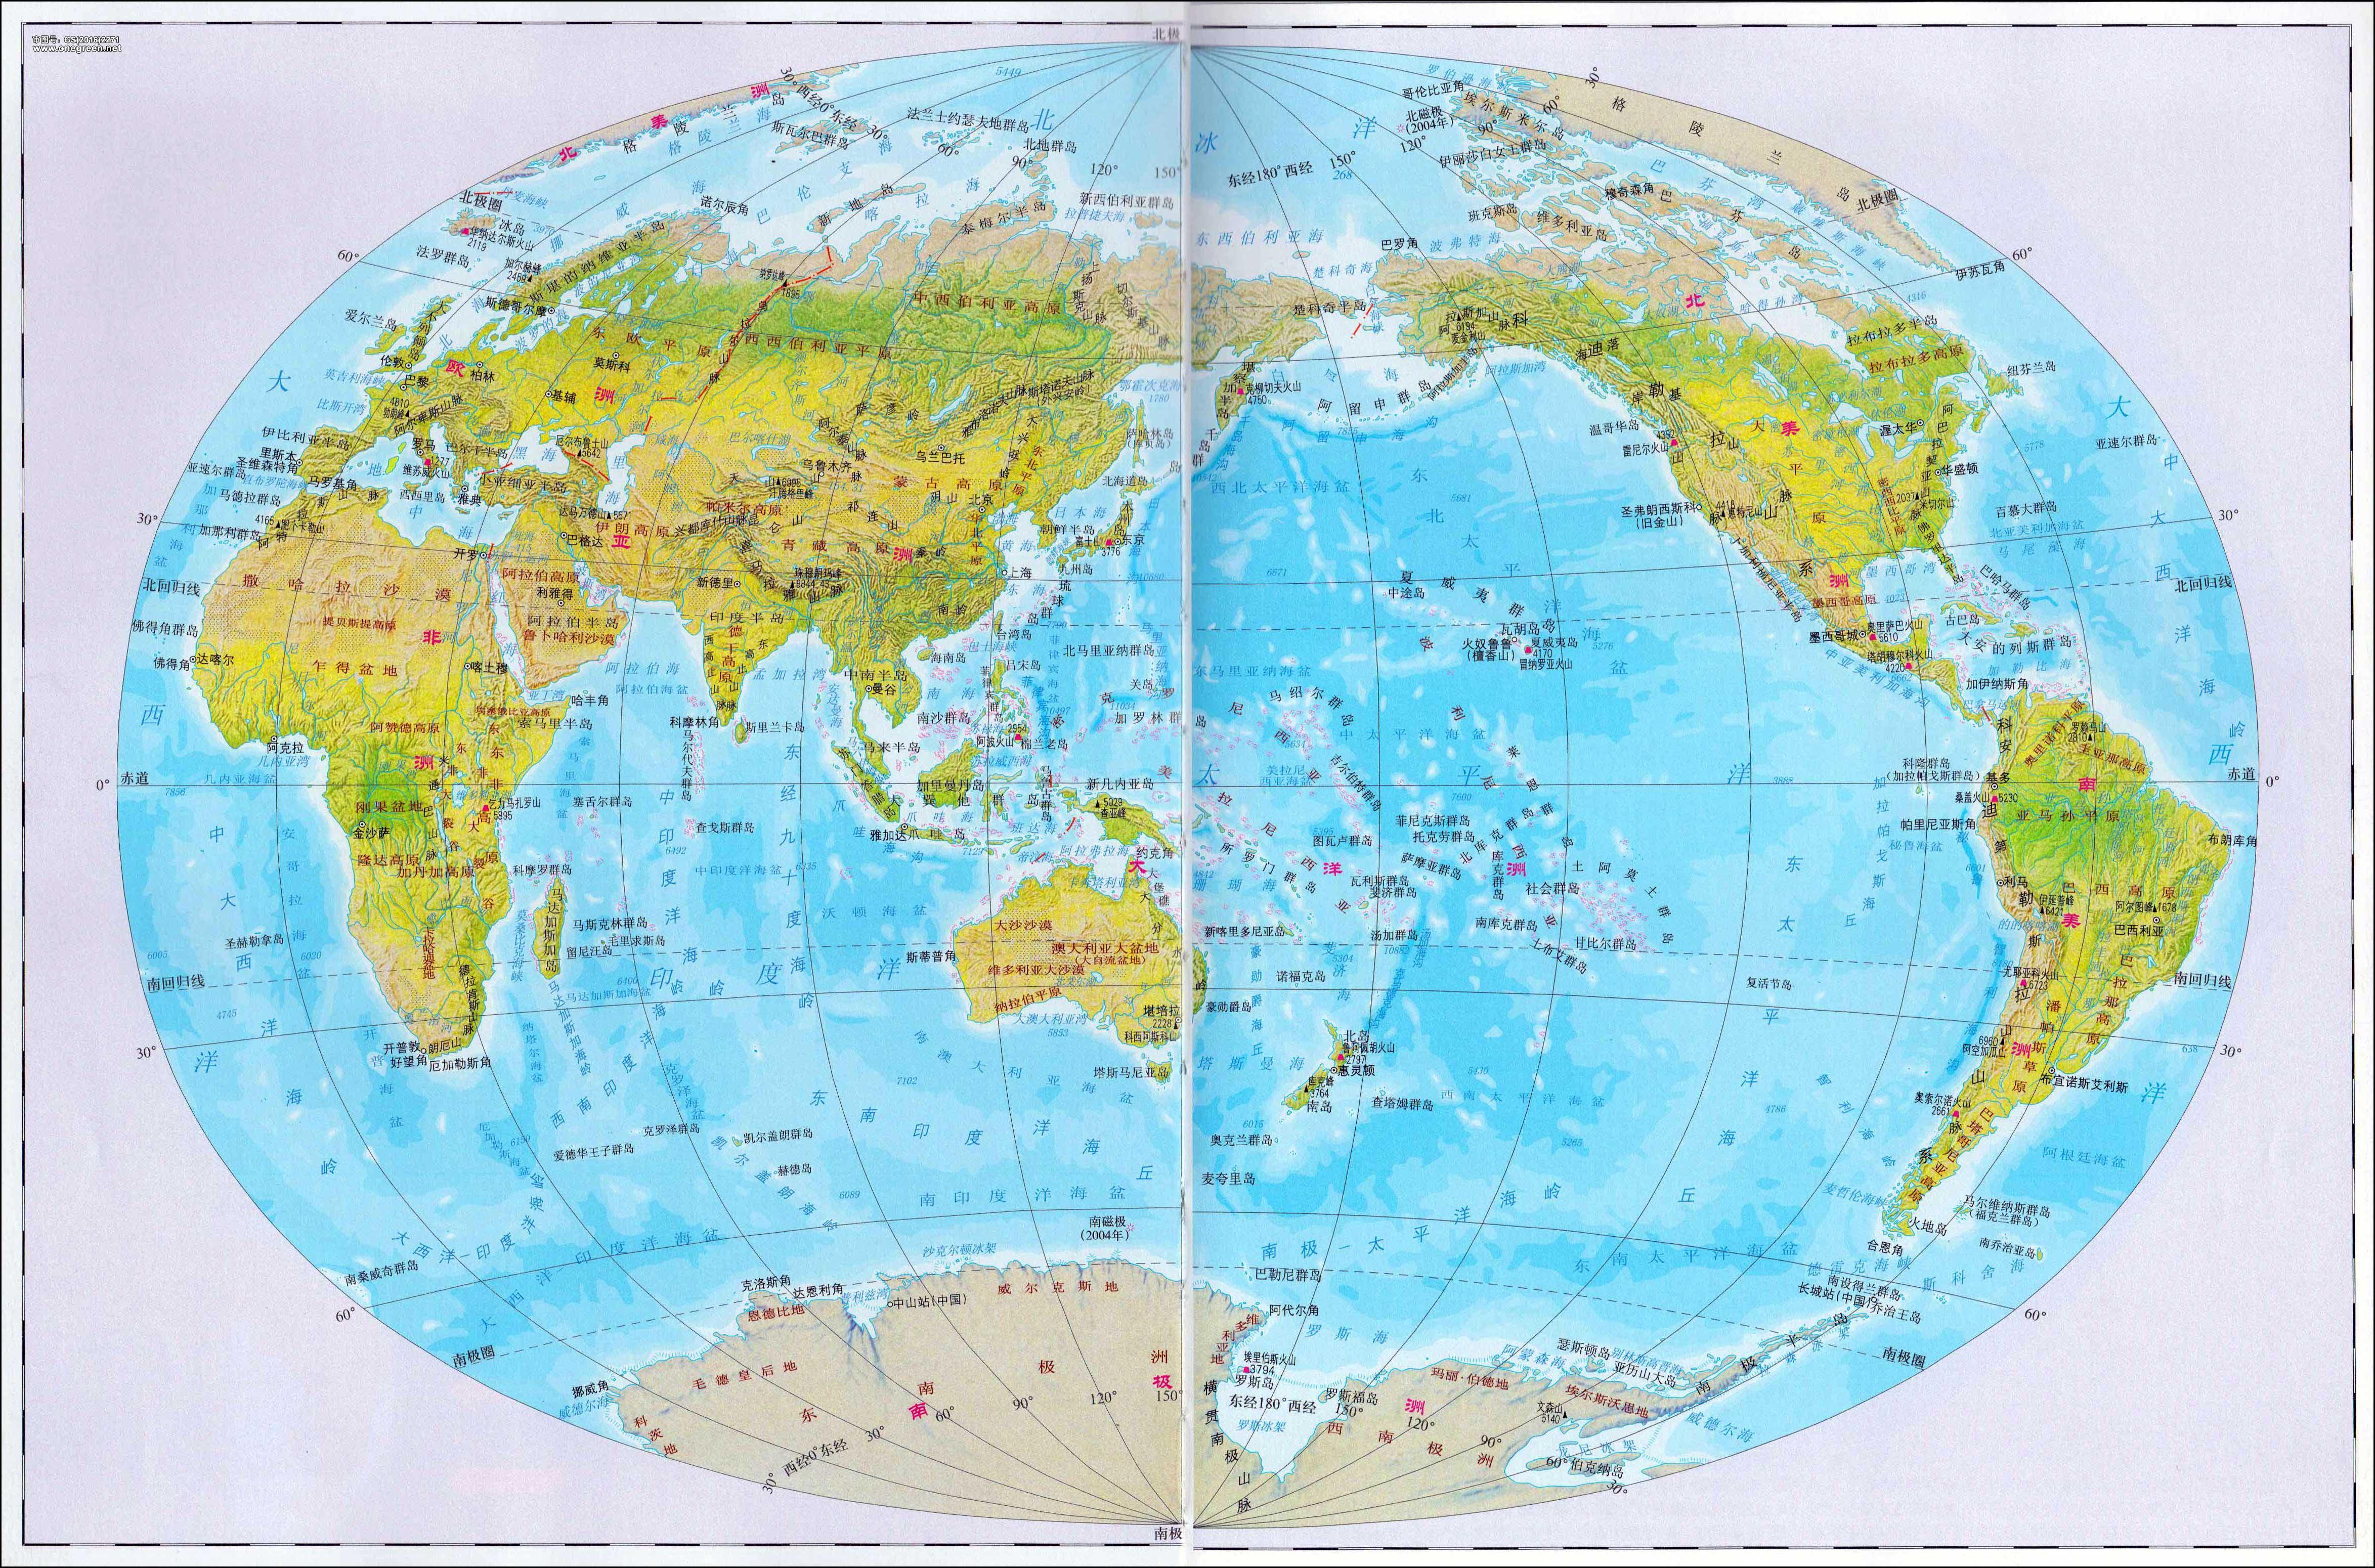 世界地形区分布示意图图片